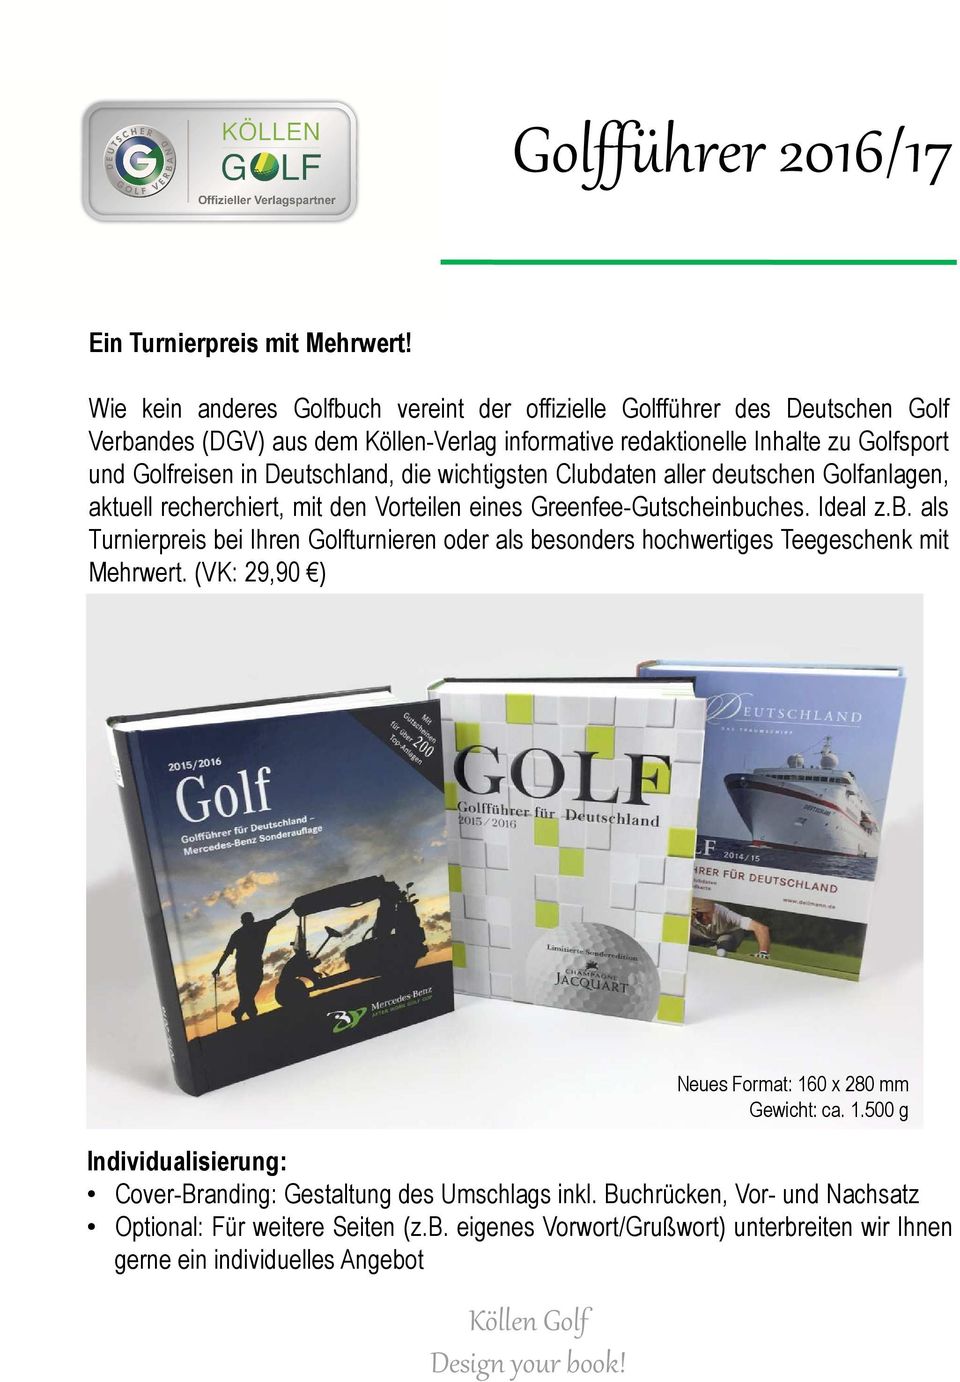 Deutschland, die wichtigsten Clubdaten aller deutschen Golfanlagen, aktuell recherchiert, mit den Vorteilen eines Greenfee-Gutscheinbuches. Ideal z.b. als Turnierpreis bei Ihren Golfturnieren oder als besonders hochwertiges Teegeschenk mit Mehrwert.